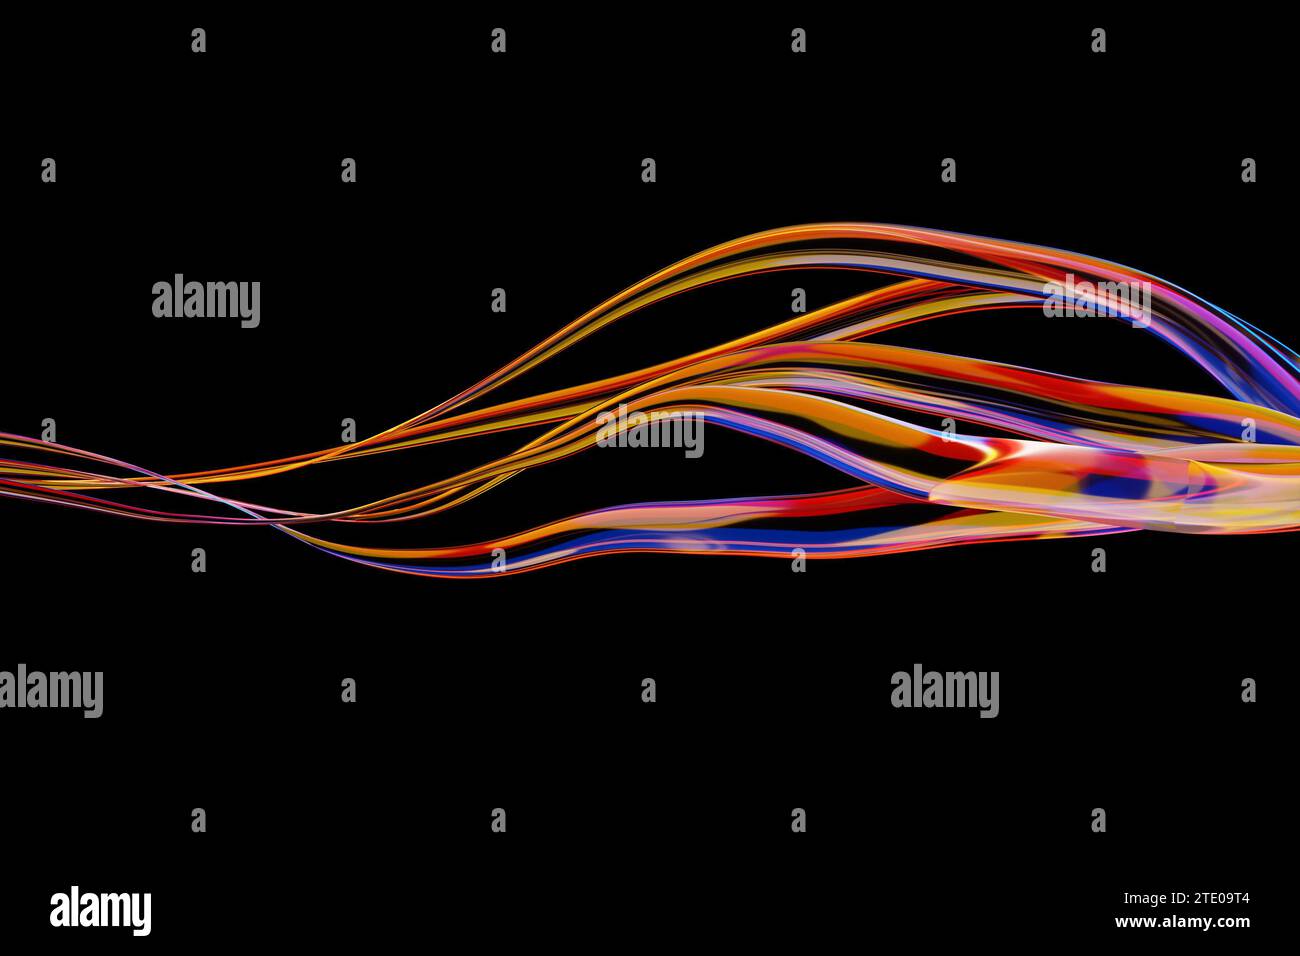 ilustración 3d de líneas geométricas coloridas, rayas similares a las ondas. Forma futurista, modelado abstracto. Foto de stock